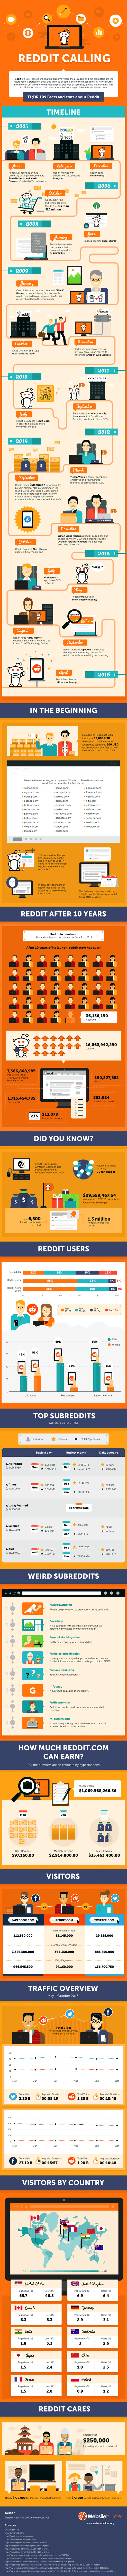 Reddit Statistics Infographic